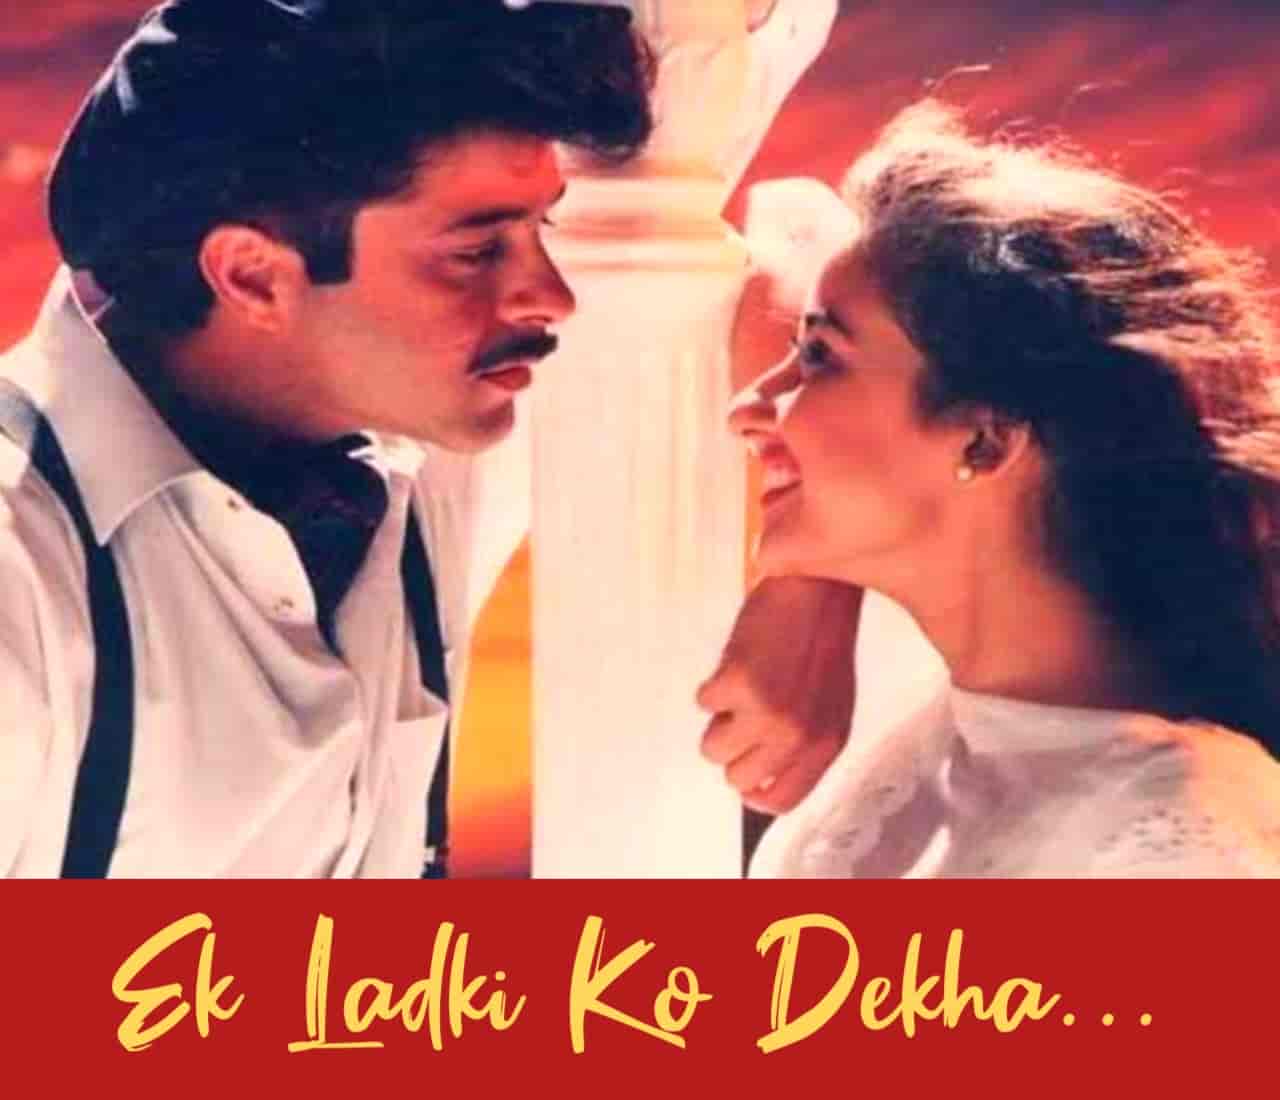 Ek Ladki Ko Dekha Hindi Love Song Lyrics, Sung By Kumar Sanu.